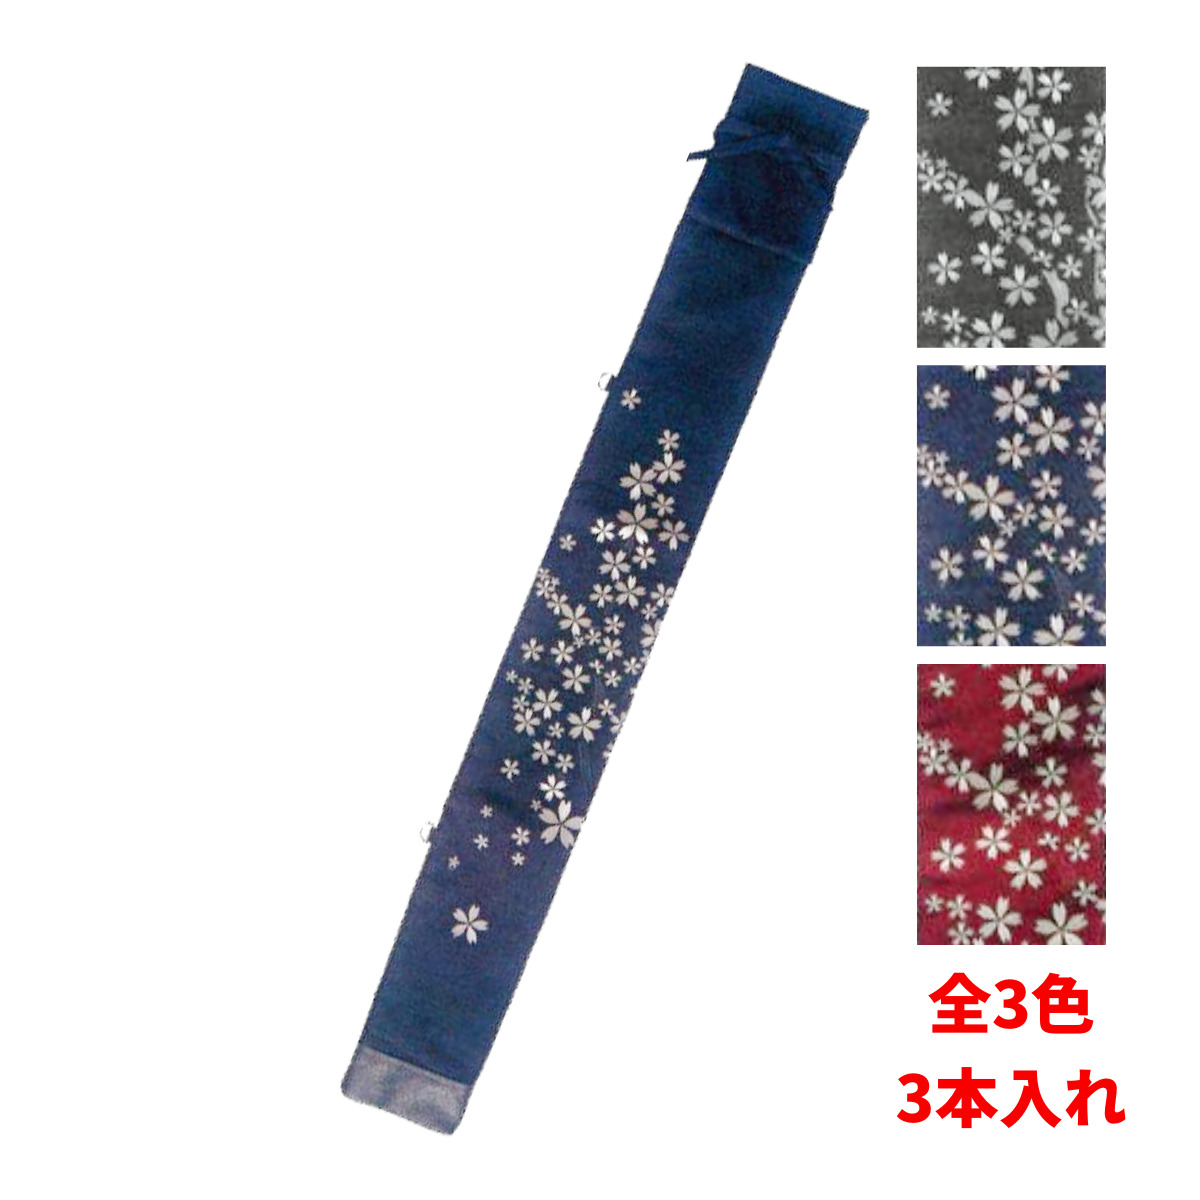 剣道 竹刀袋 8号帆布 小桜 刺繍 略式 3本入 全3色 小さいサイズから39まで幅広いサイズを収納 送料無料 武道園